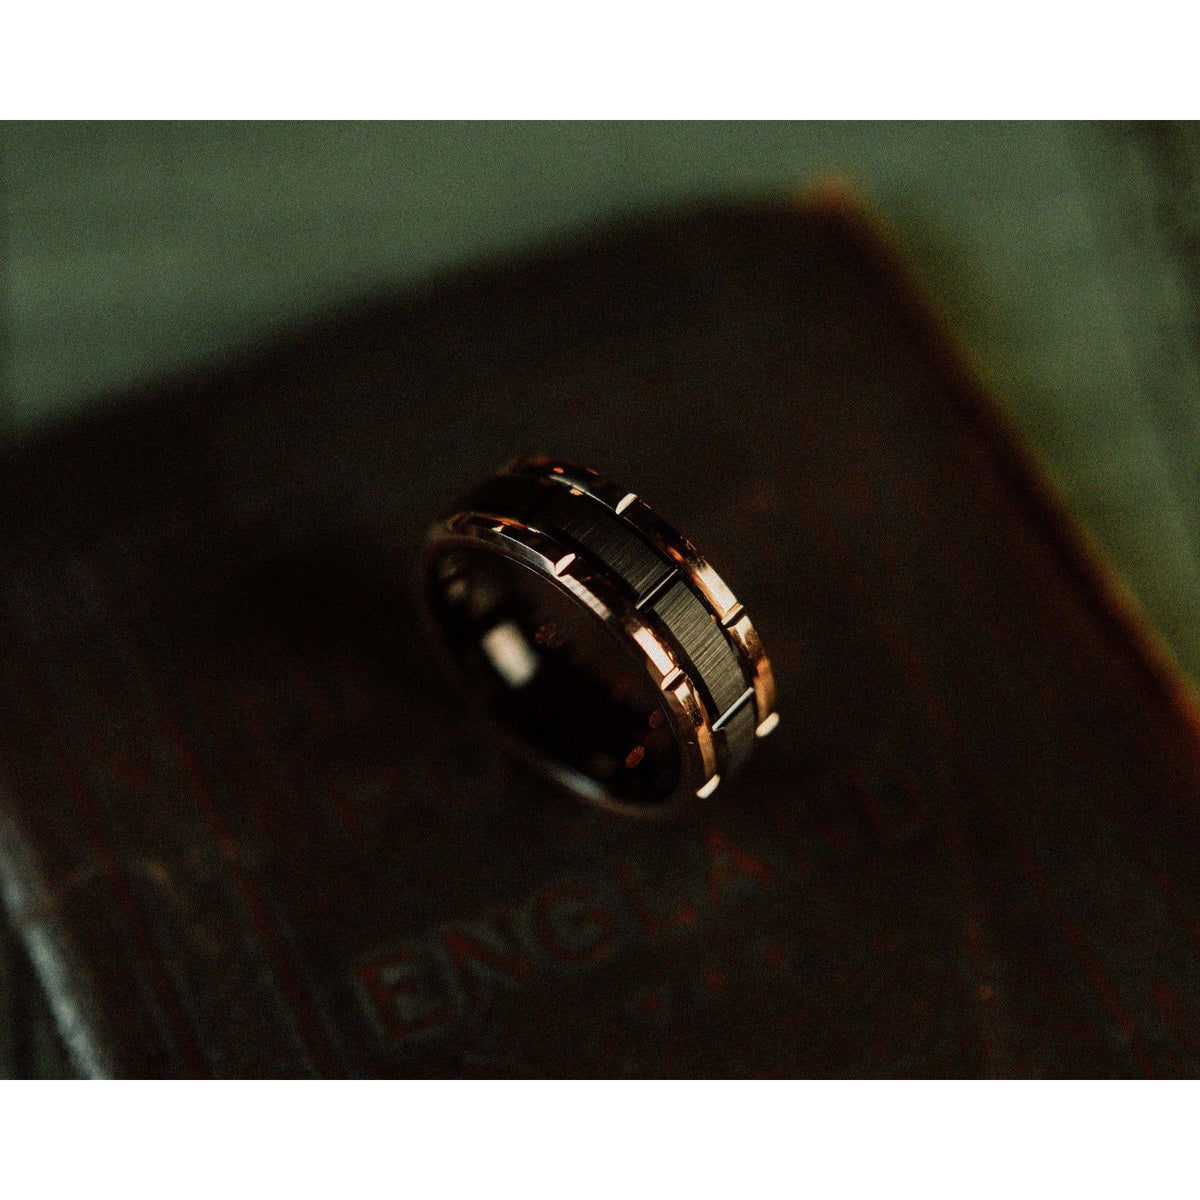 The “Duke” Ring